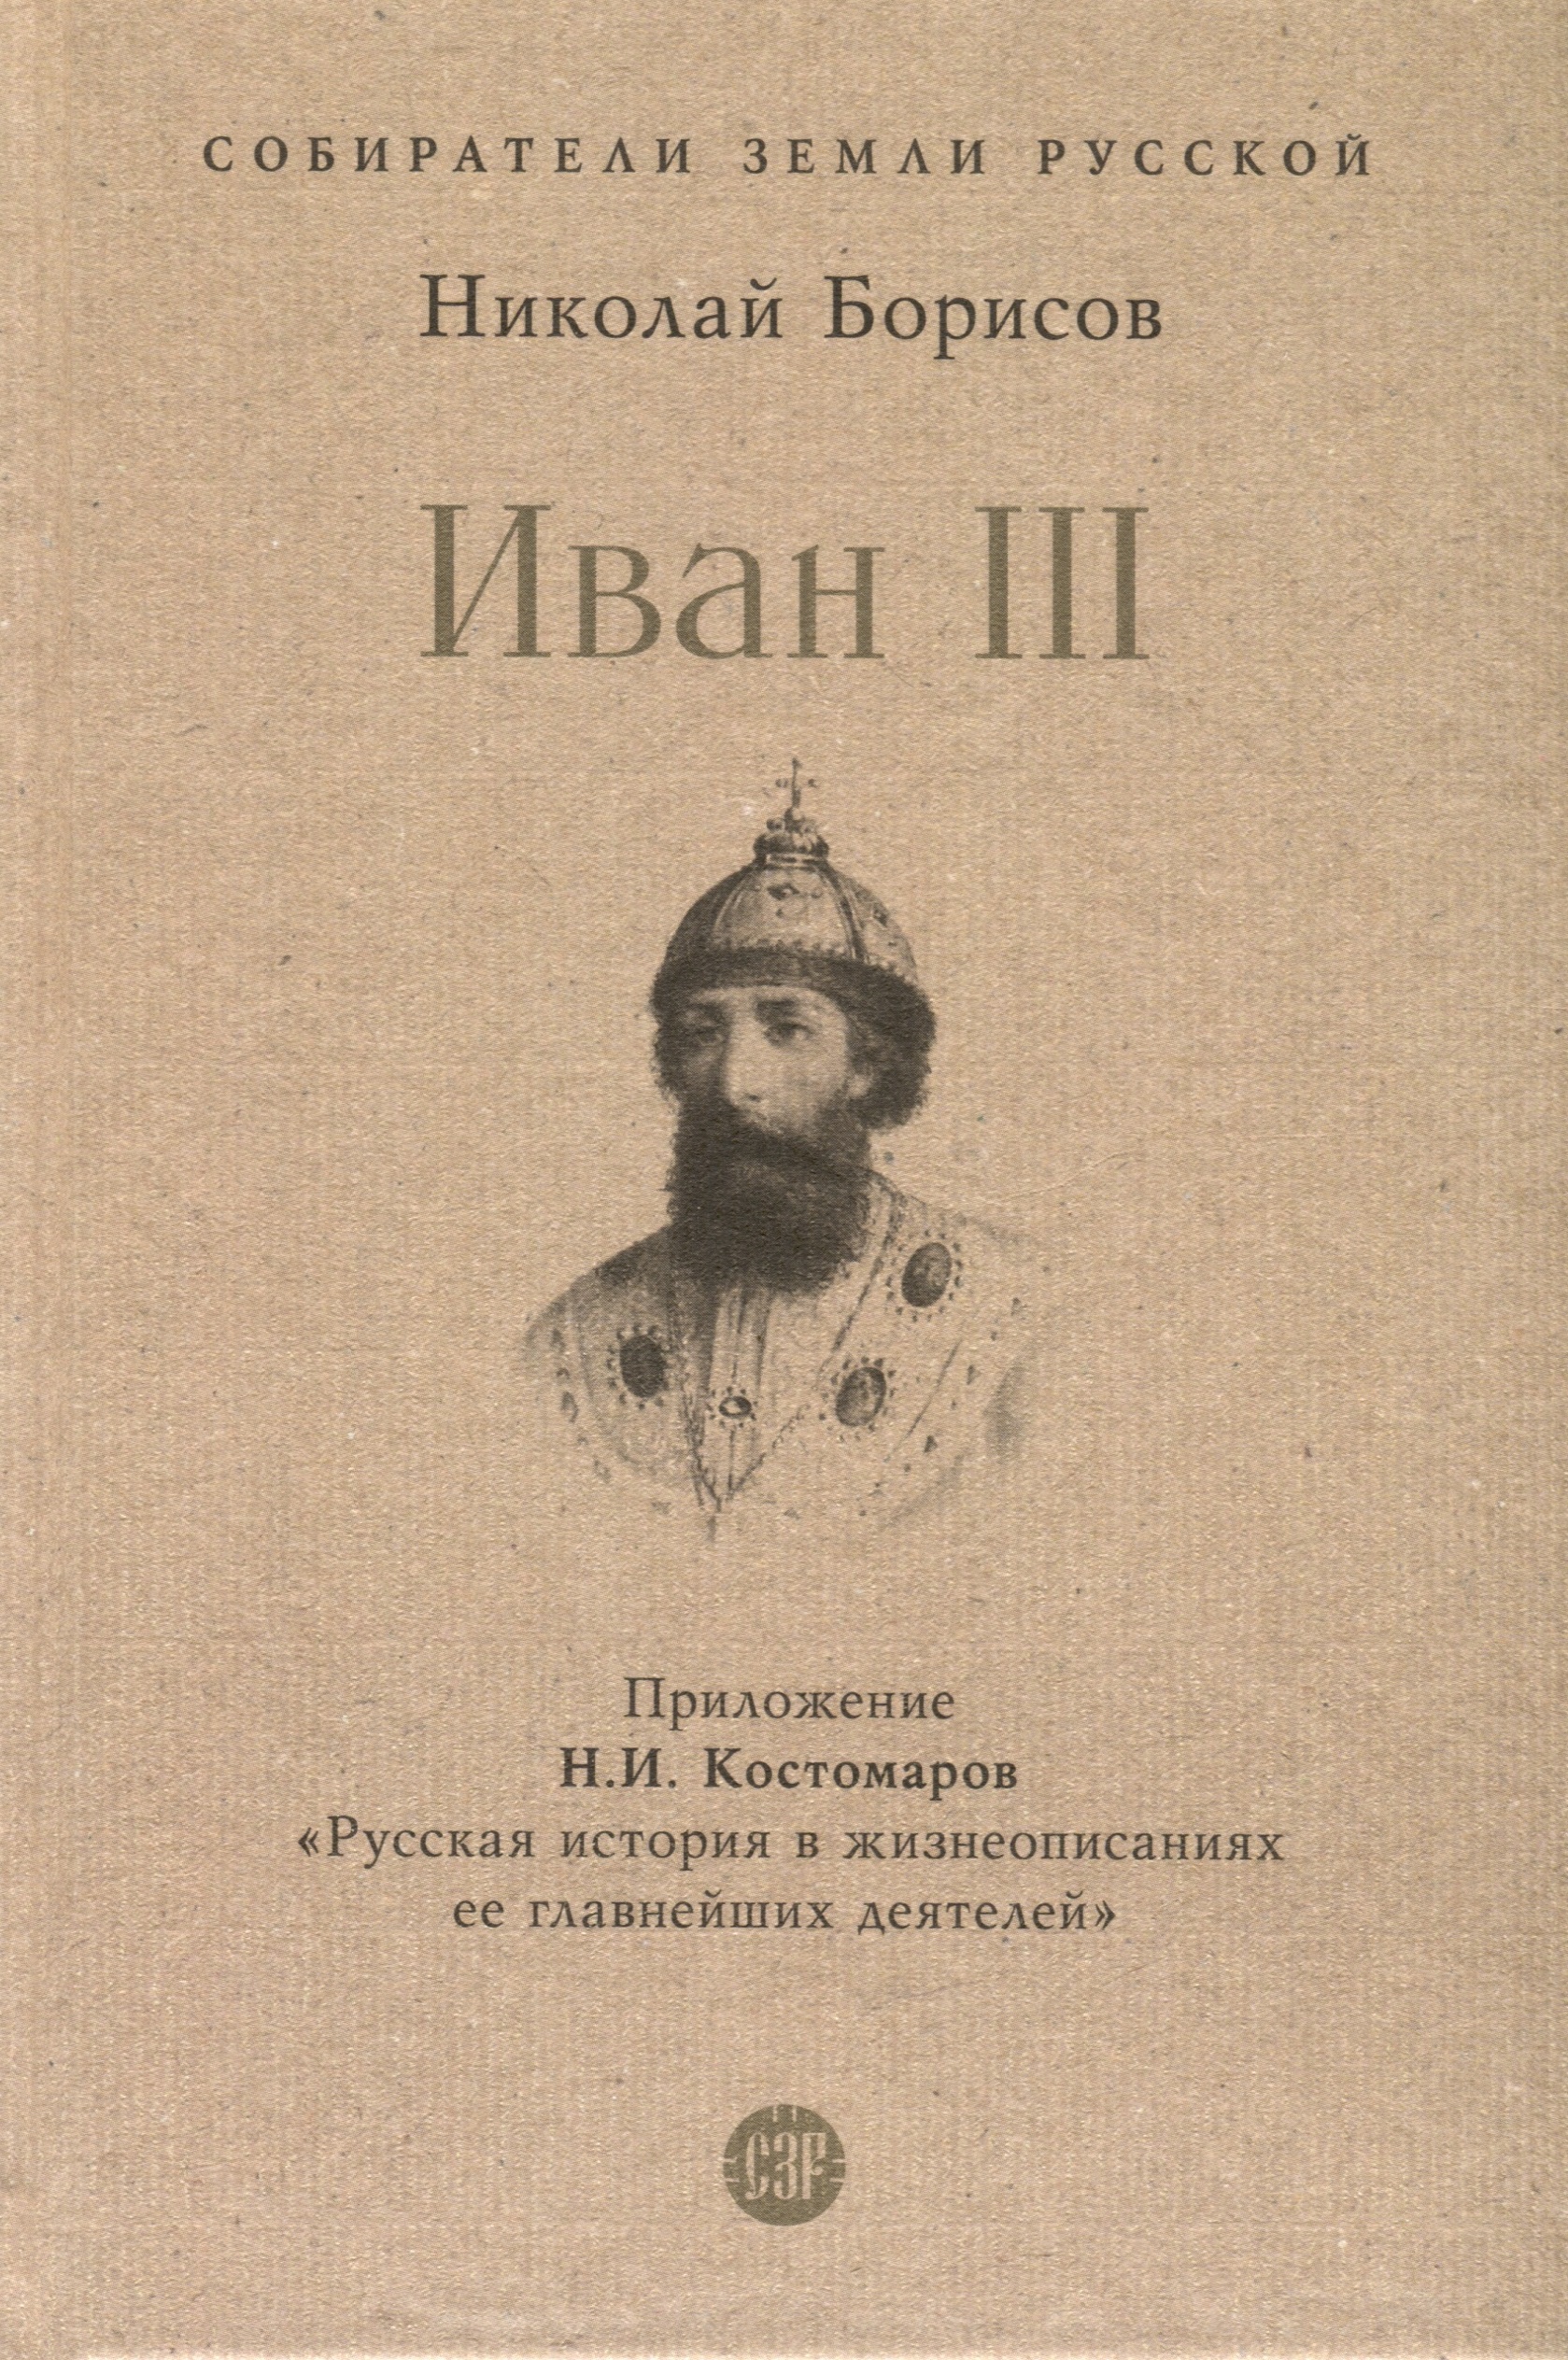 волков владимир иван iii непобедимый государь Борисов Николай Сергеевич Иван III